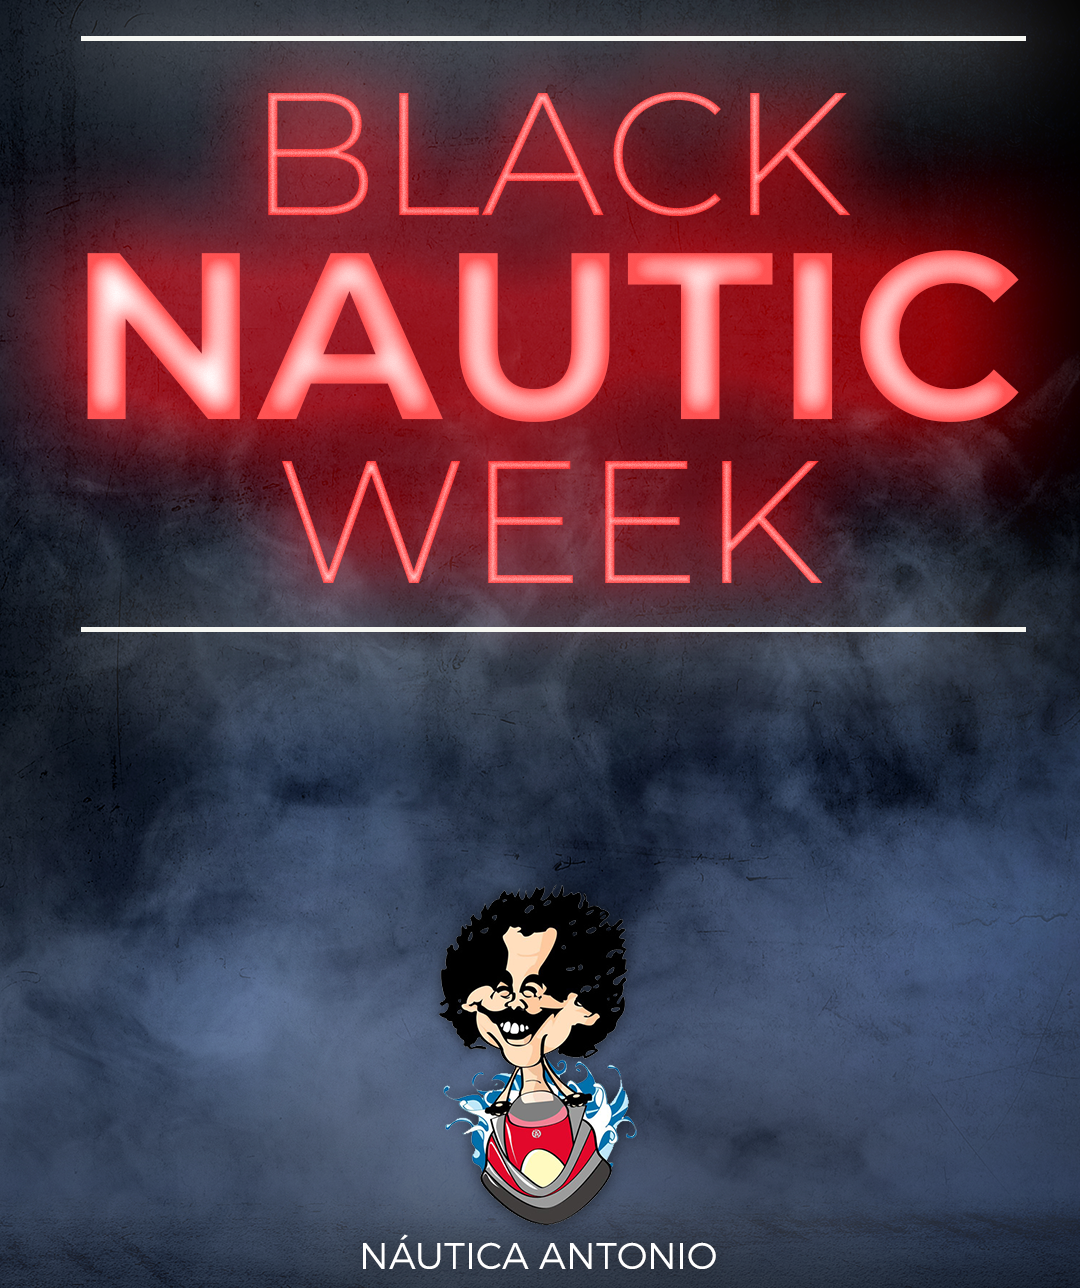 Black NAUTIC week